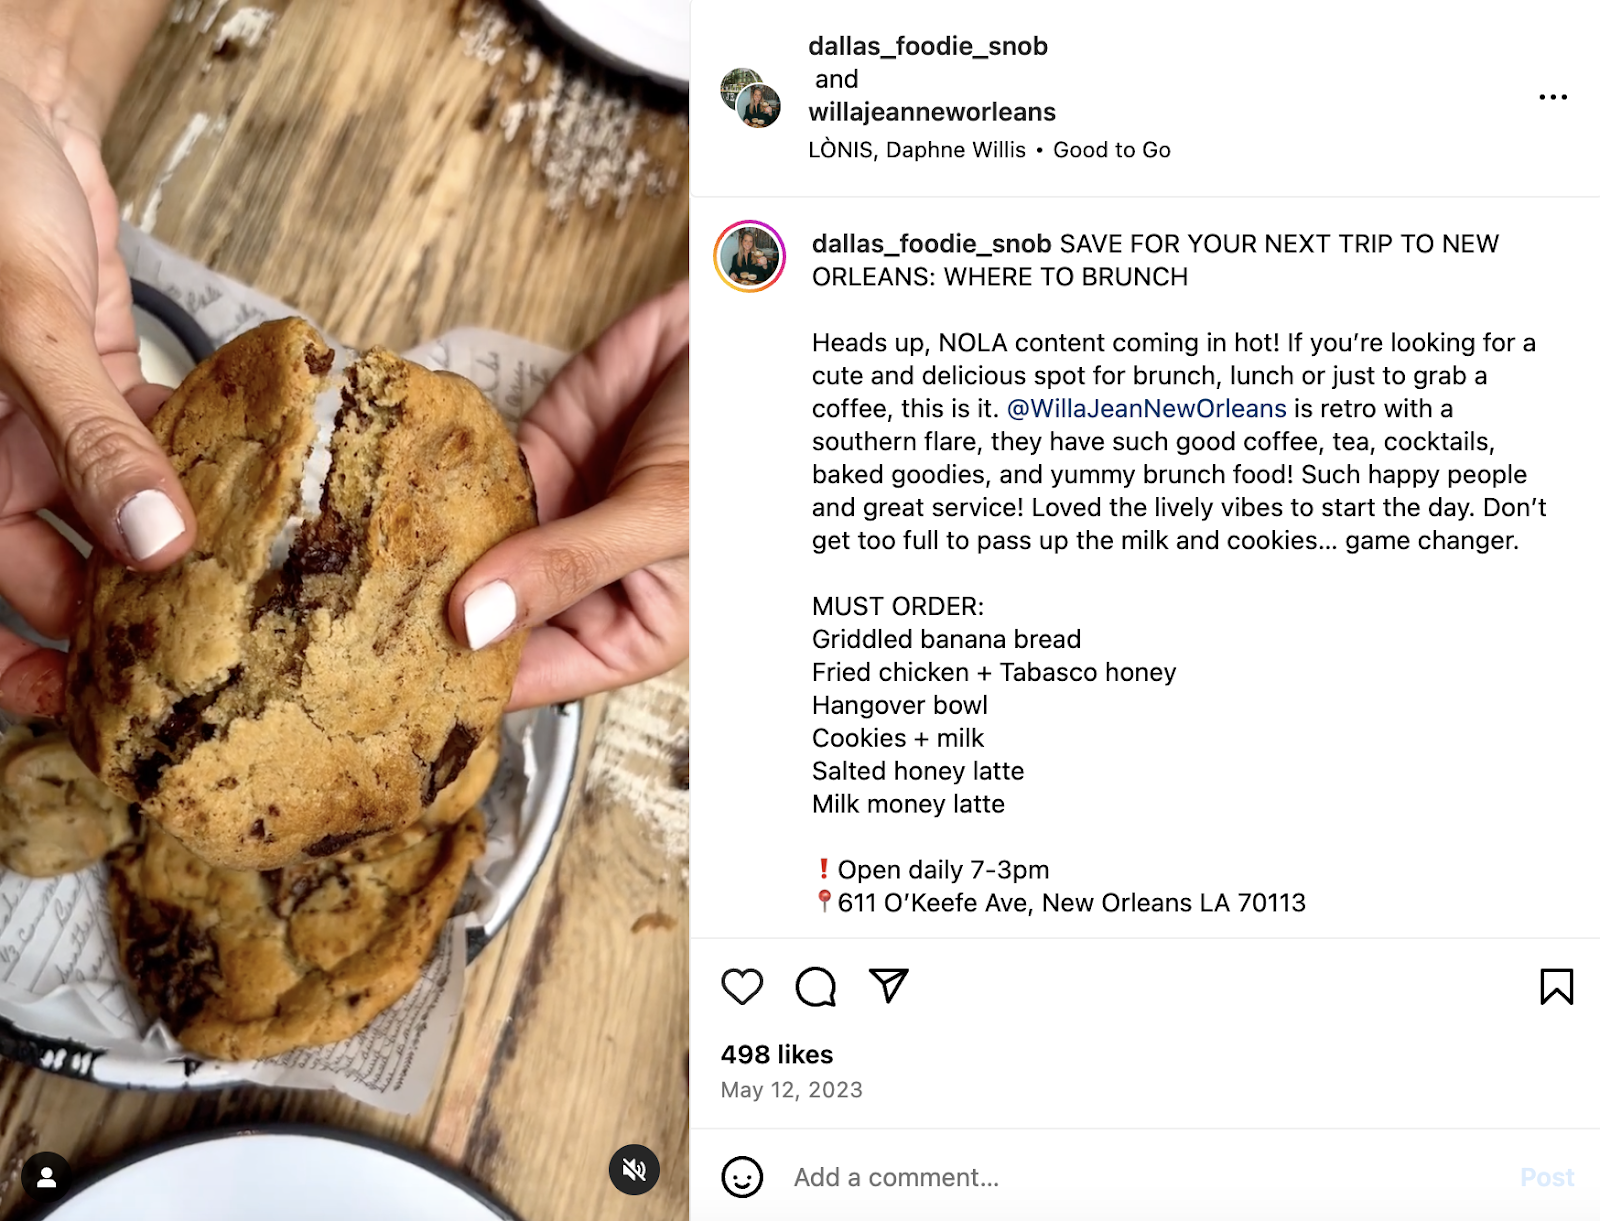 रचनात्मक रेस्तरां विपणन विचार: एक प्रभावशाली पोस्ट जिसे न्यू ऑरलियन्स रेस्तरां विला जीन ने अपने इंस्टाग्राम पेज पर पुनः साझा किया।